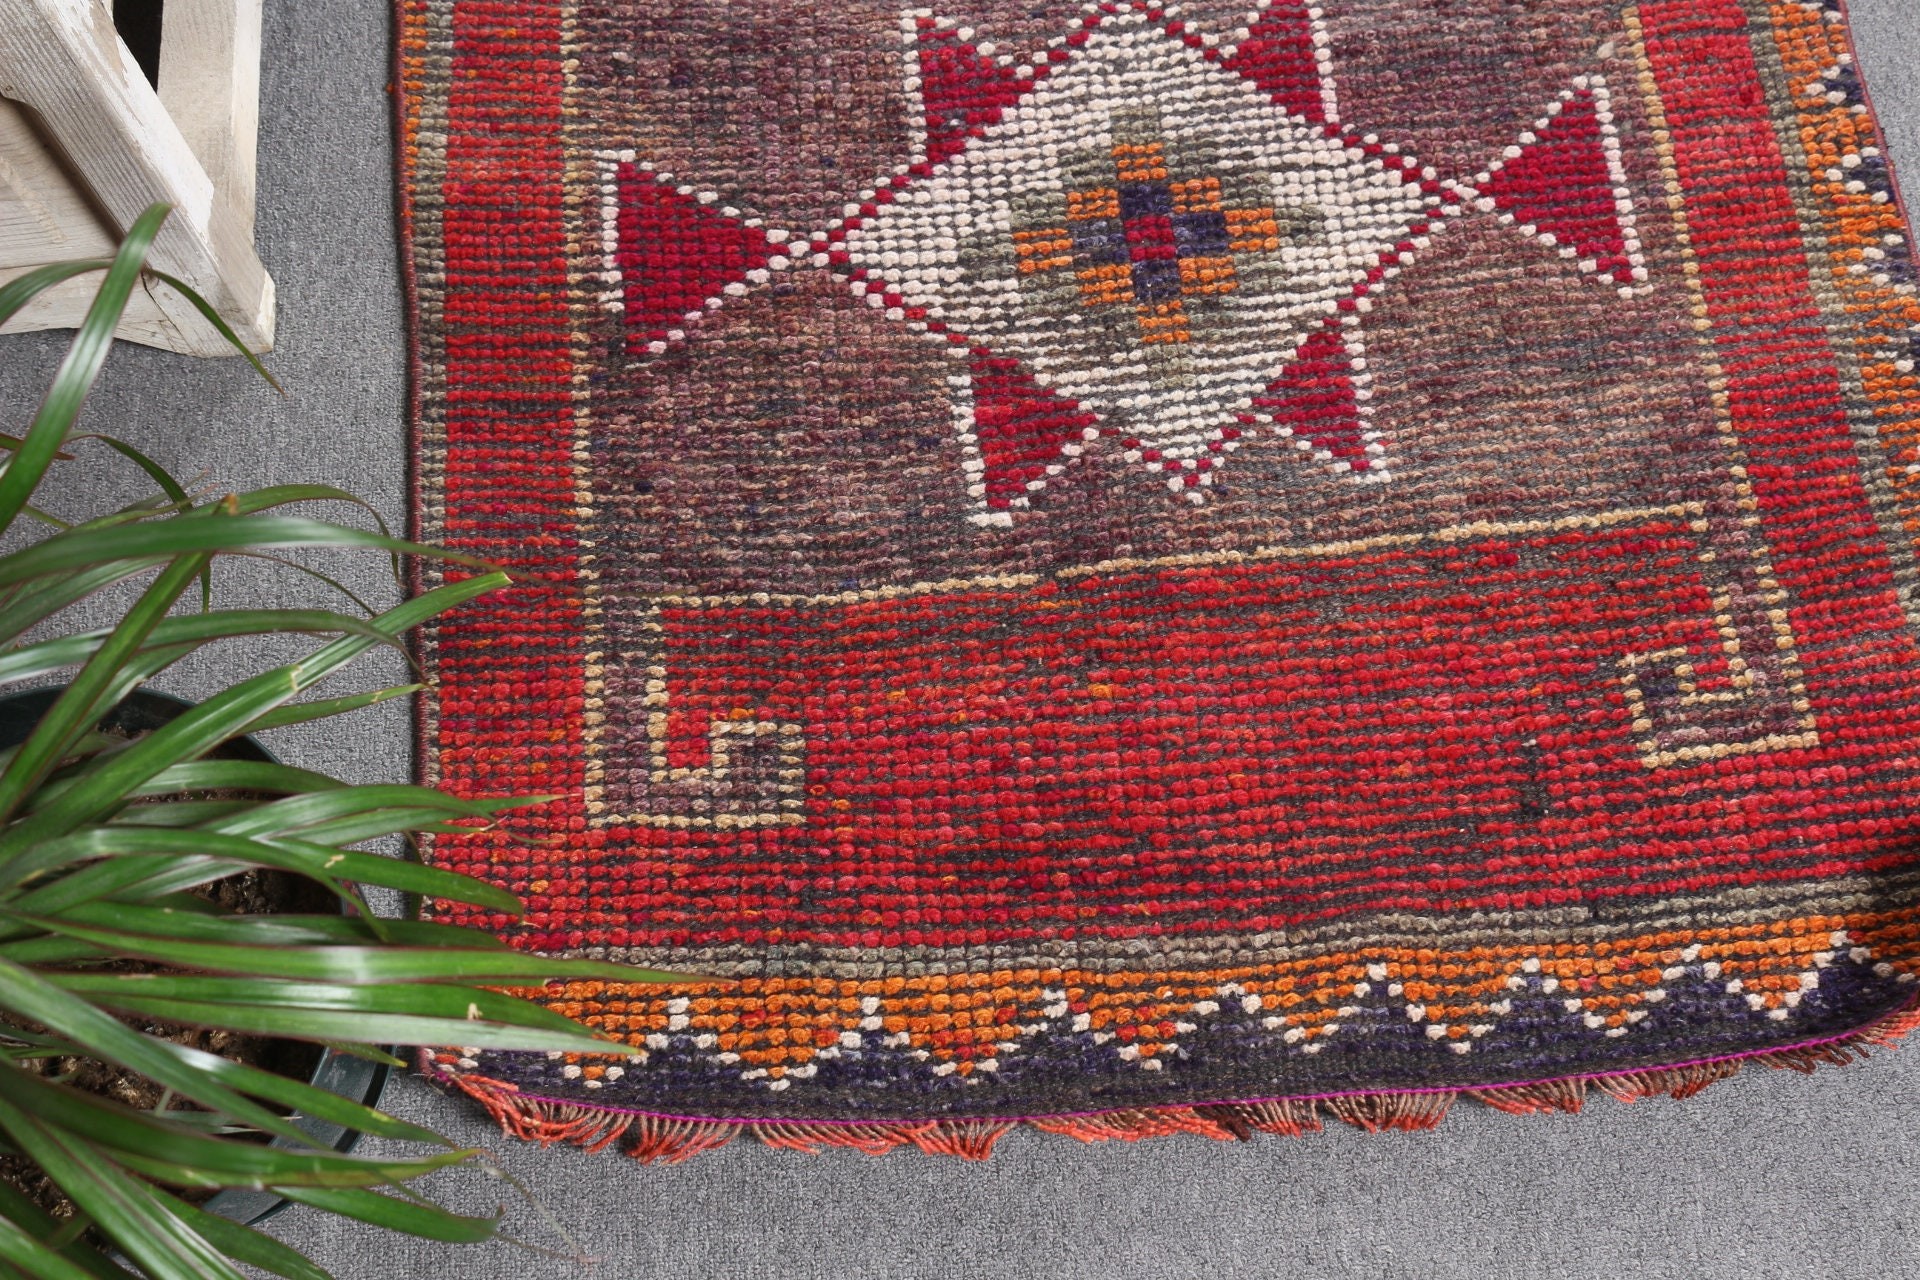 Turkish Rug, Red Antique Rug, Antique Rug, Old Rug, Rugs for Kitchen, Kitchen Rug, Stair Rug, Wool Rugs, Vintage Rug, 2.8x9.4 ft Runner Rug